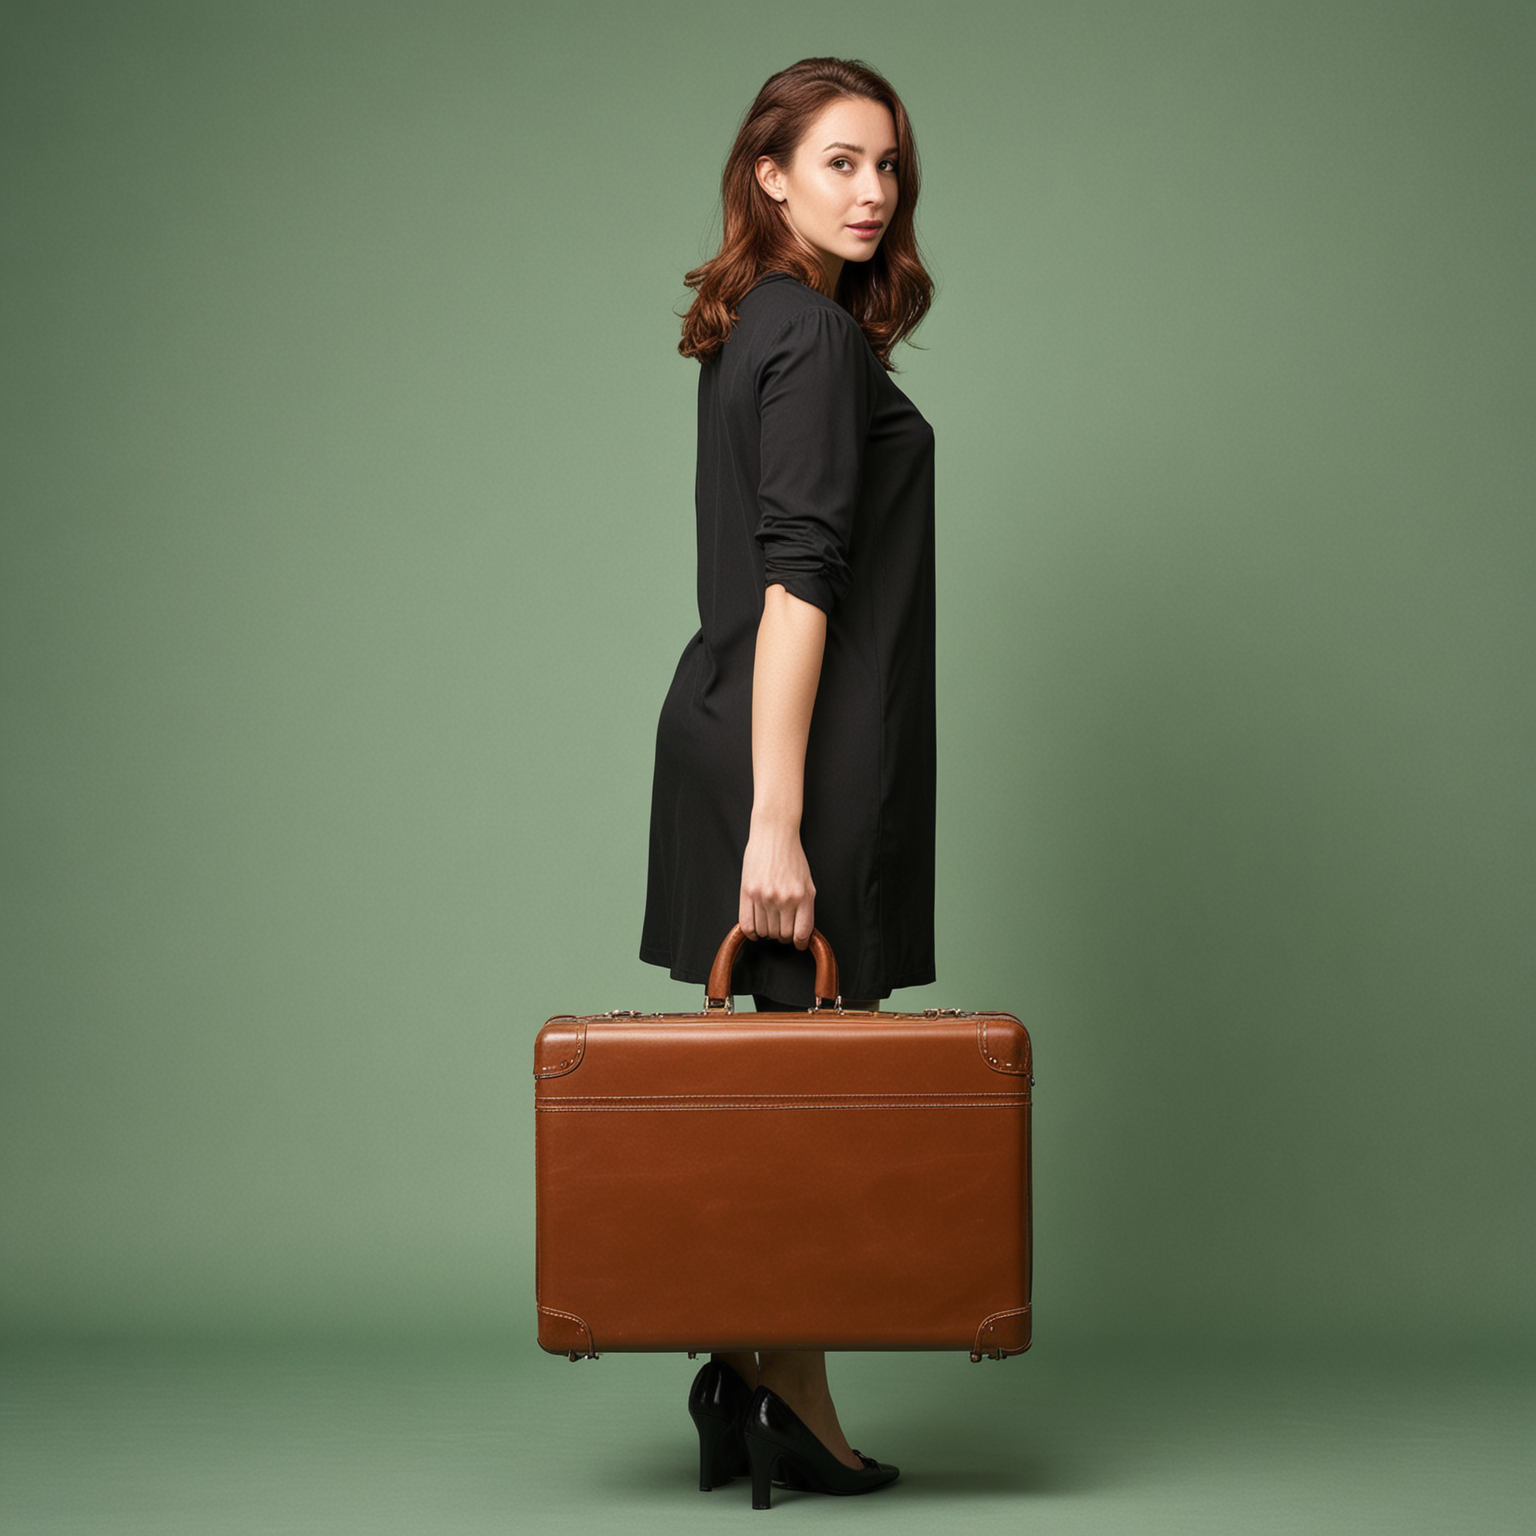 sur fond vert, une  femme de dos  avec une valise brune à la main année 60 habillée ton noir